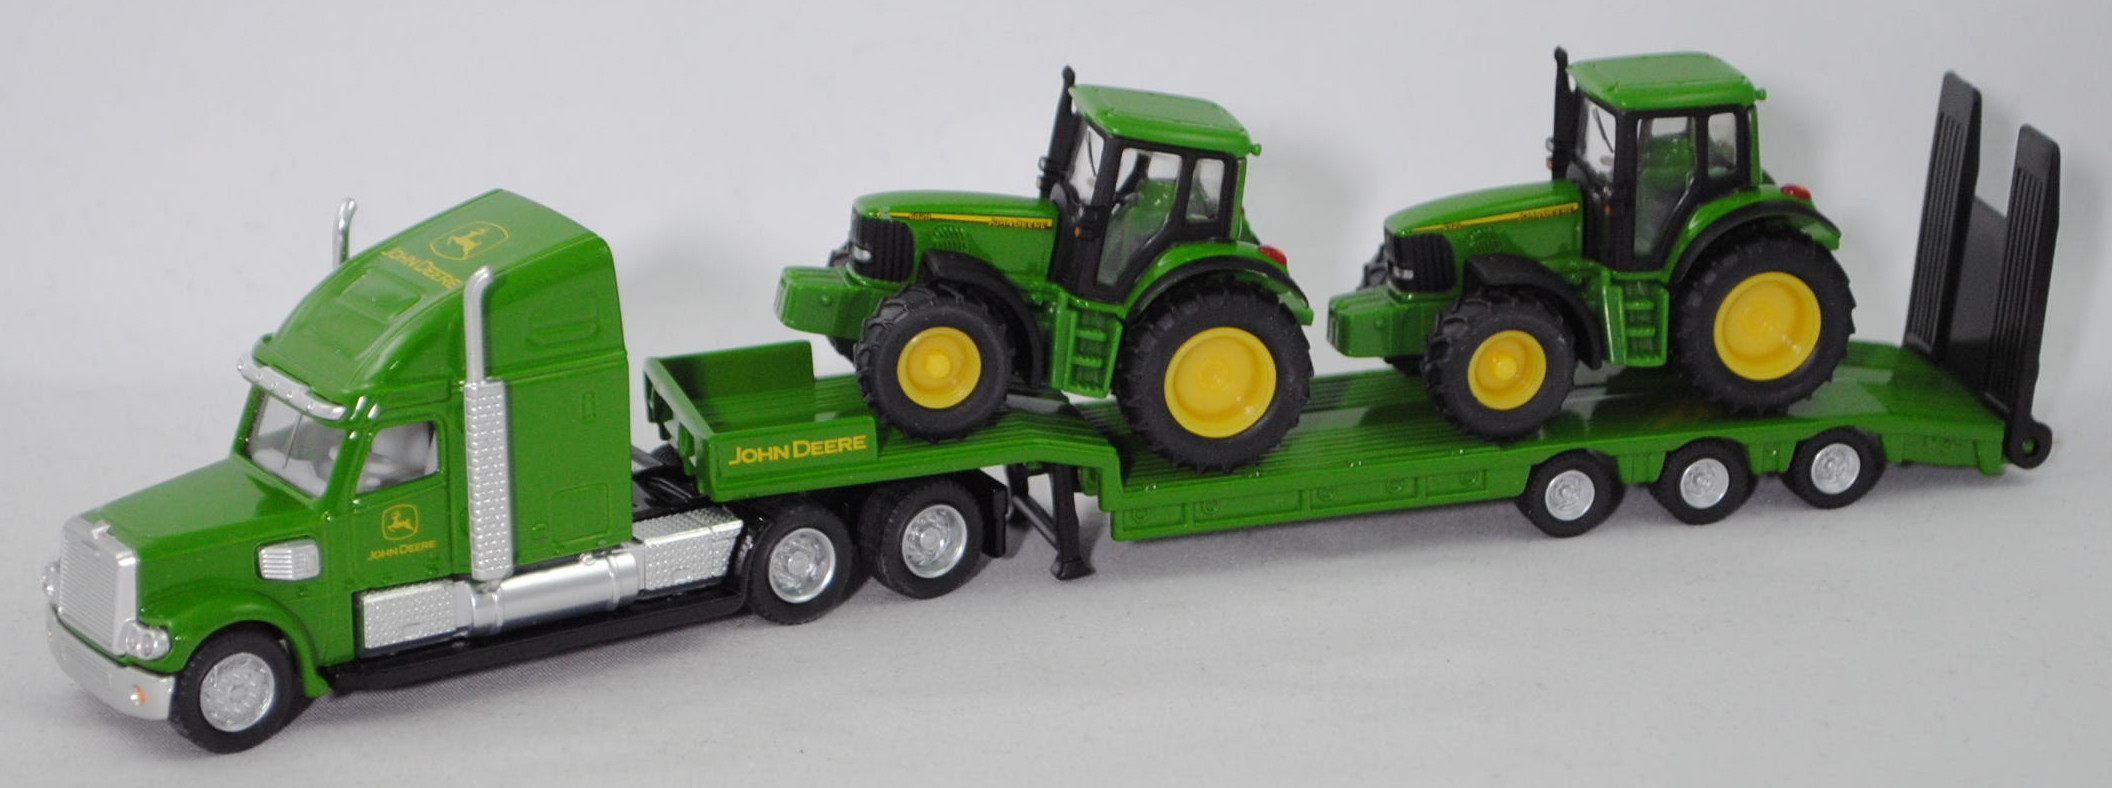 00000 FREIGHTLINER CORONADO mit Tieflader und John Deere Traktoren, grün/gelb, 1:87, L17mK